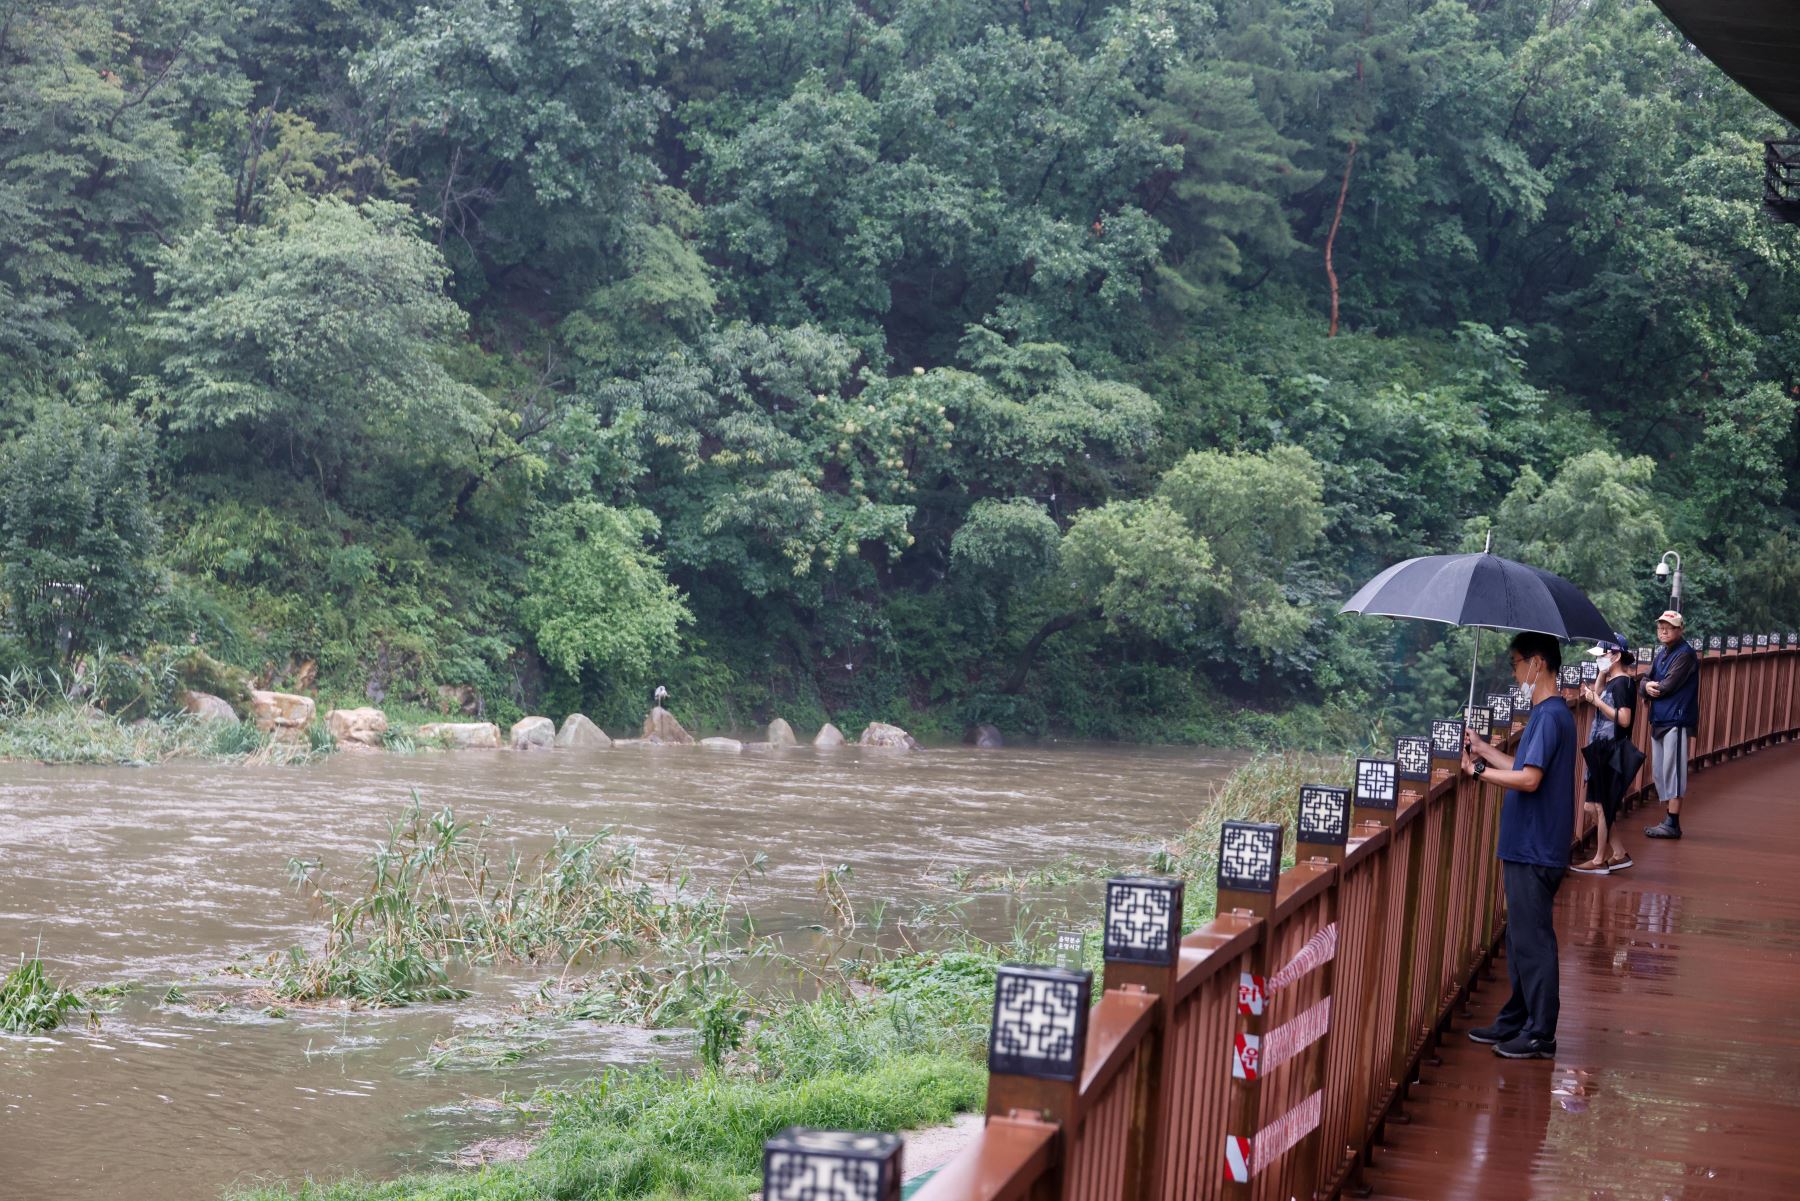 La gente mira un parque inundado a lo largo del arroyo Hongje en Seúl, Corea del Sur. Según informes de prensa, 13 personas están muertas y 13 personas faltan después de fuertes lluvias que causaron inundaciones en Seúl. 

Foto: EFE